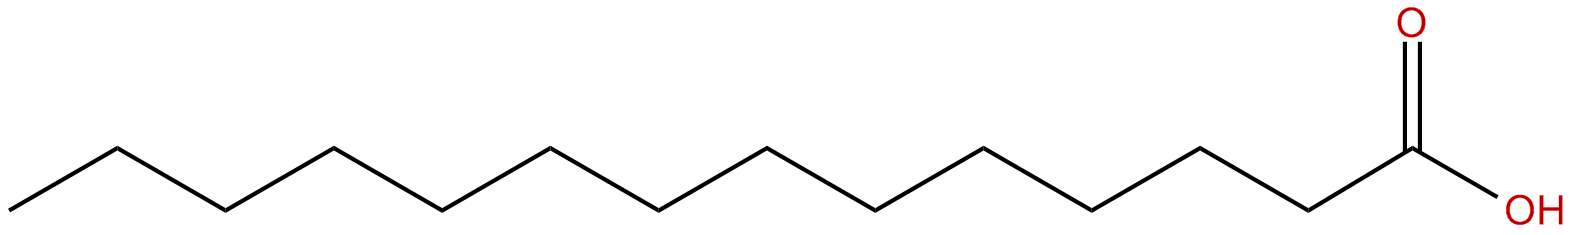 Image of tetradecanoic acid